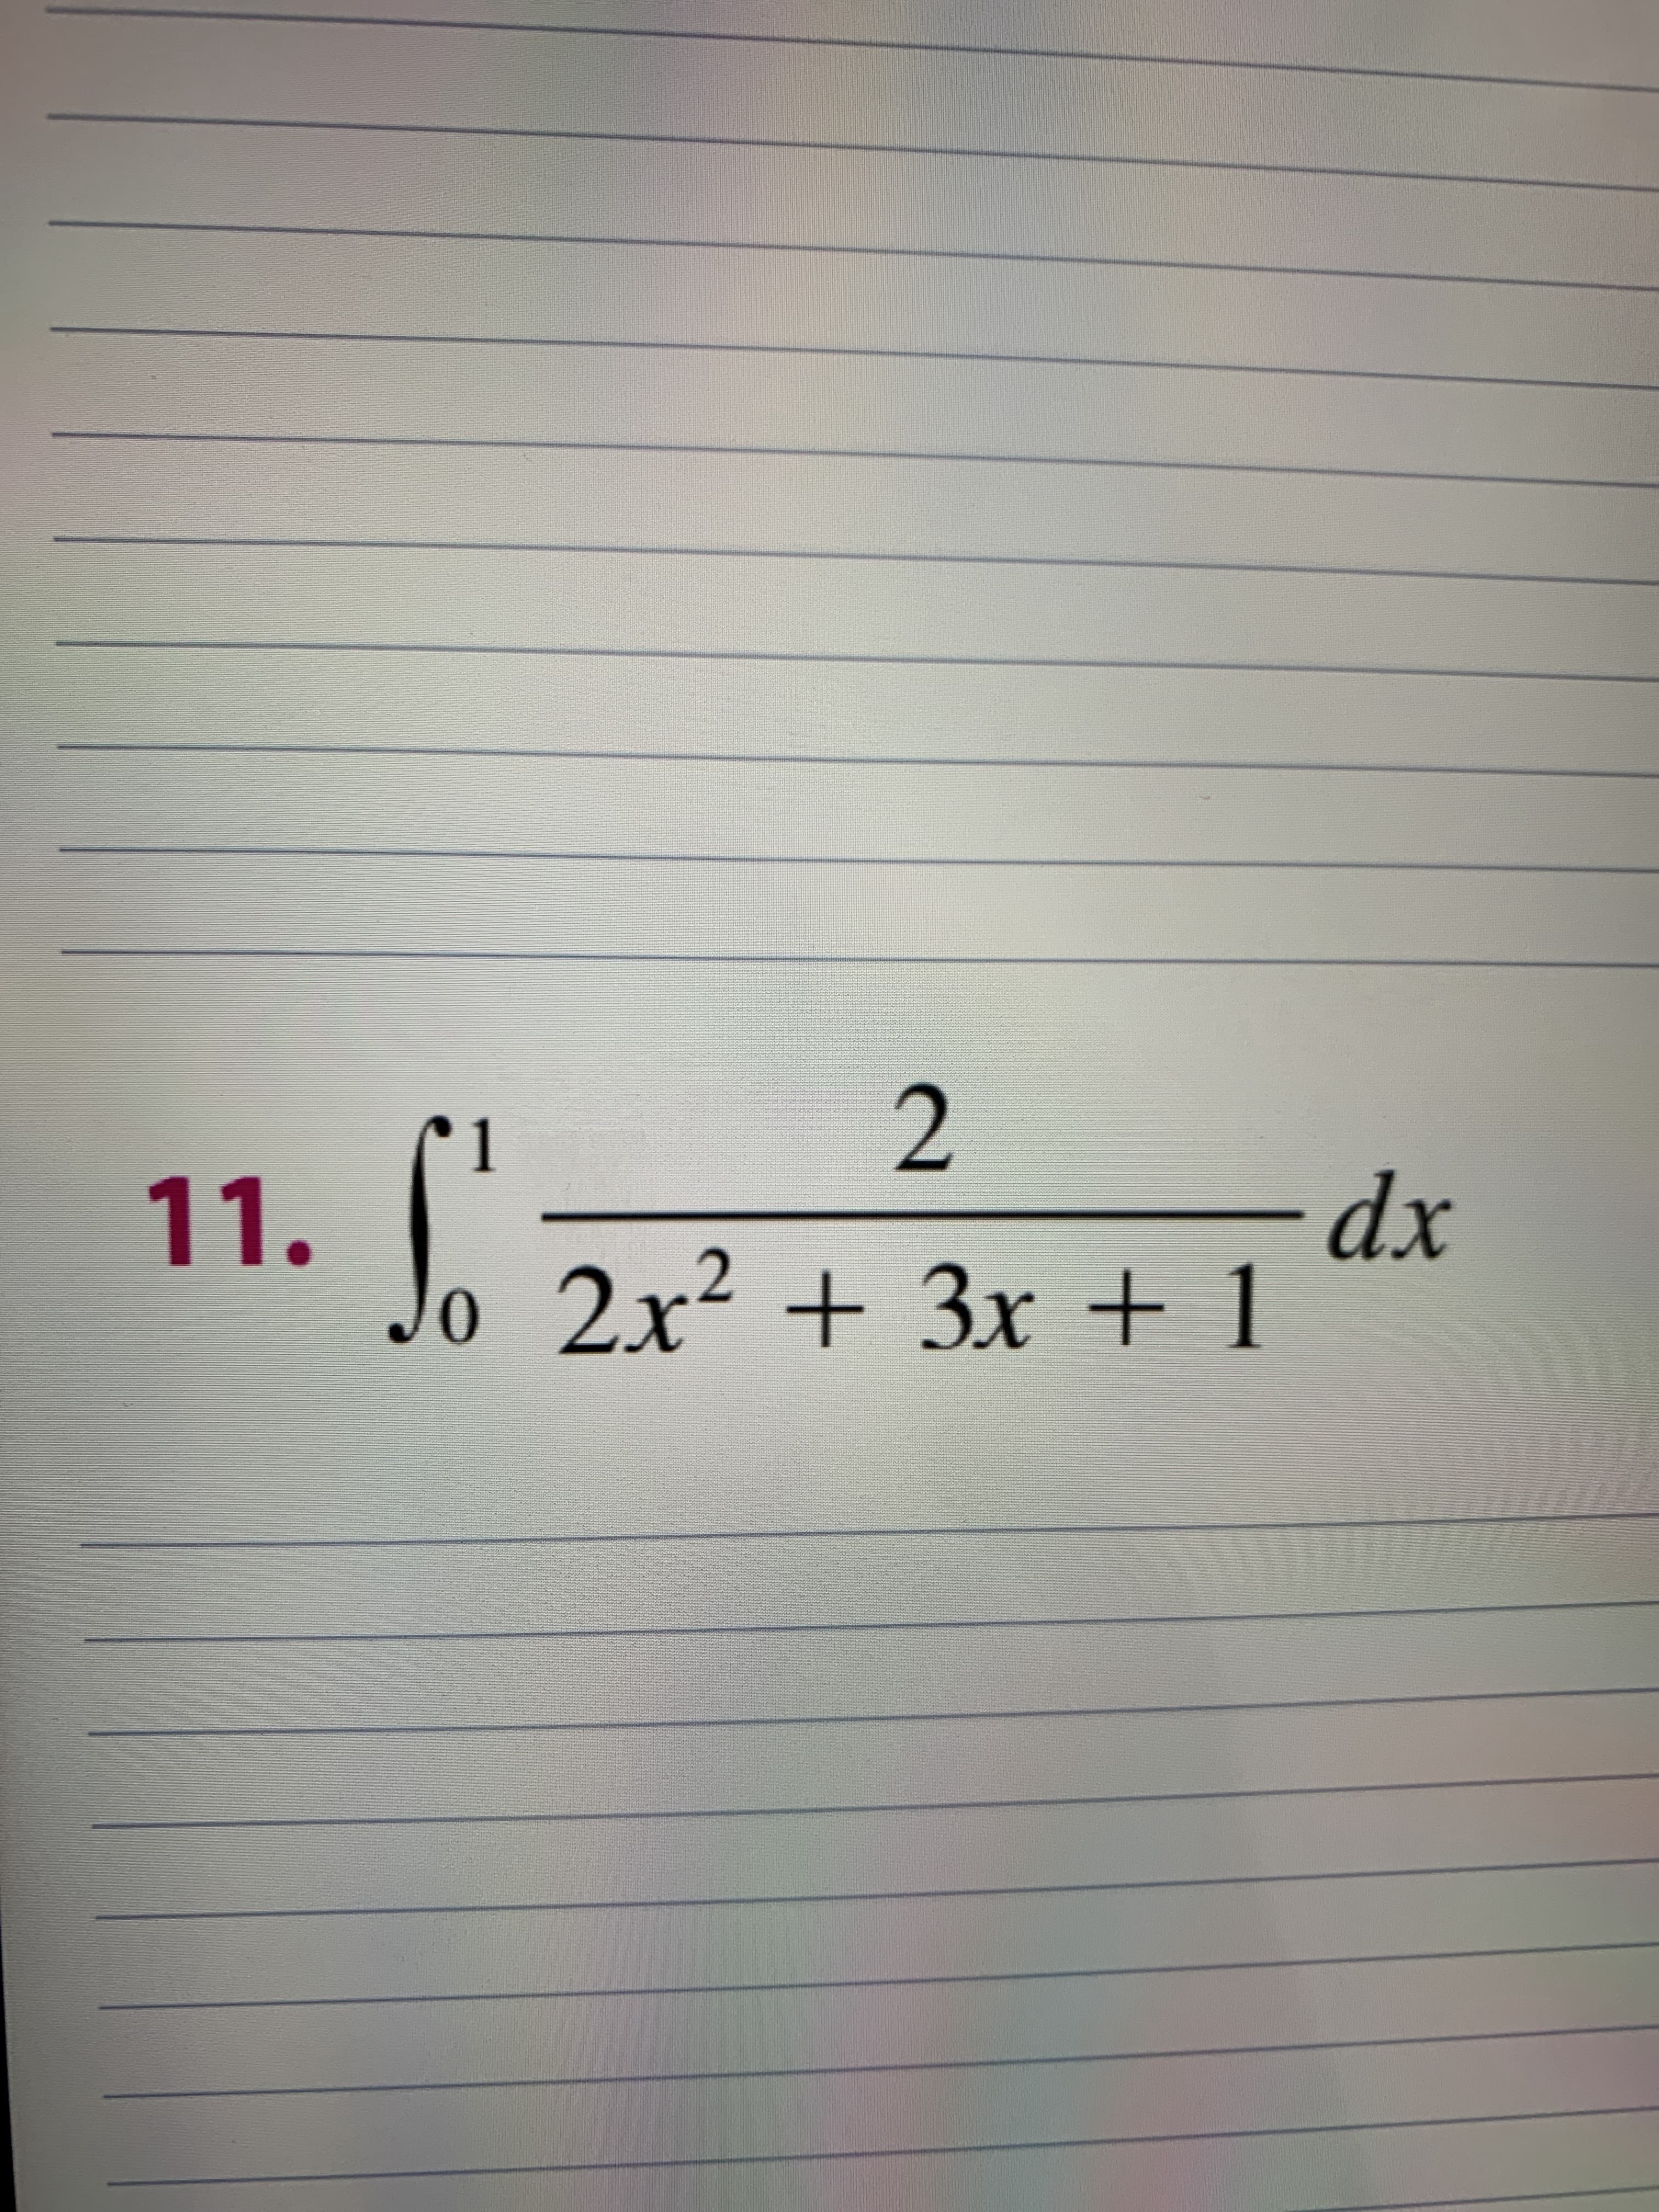 J
-dp-
2x² +3x + 1
